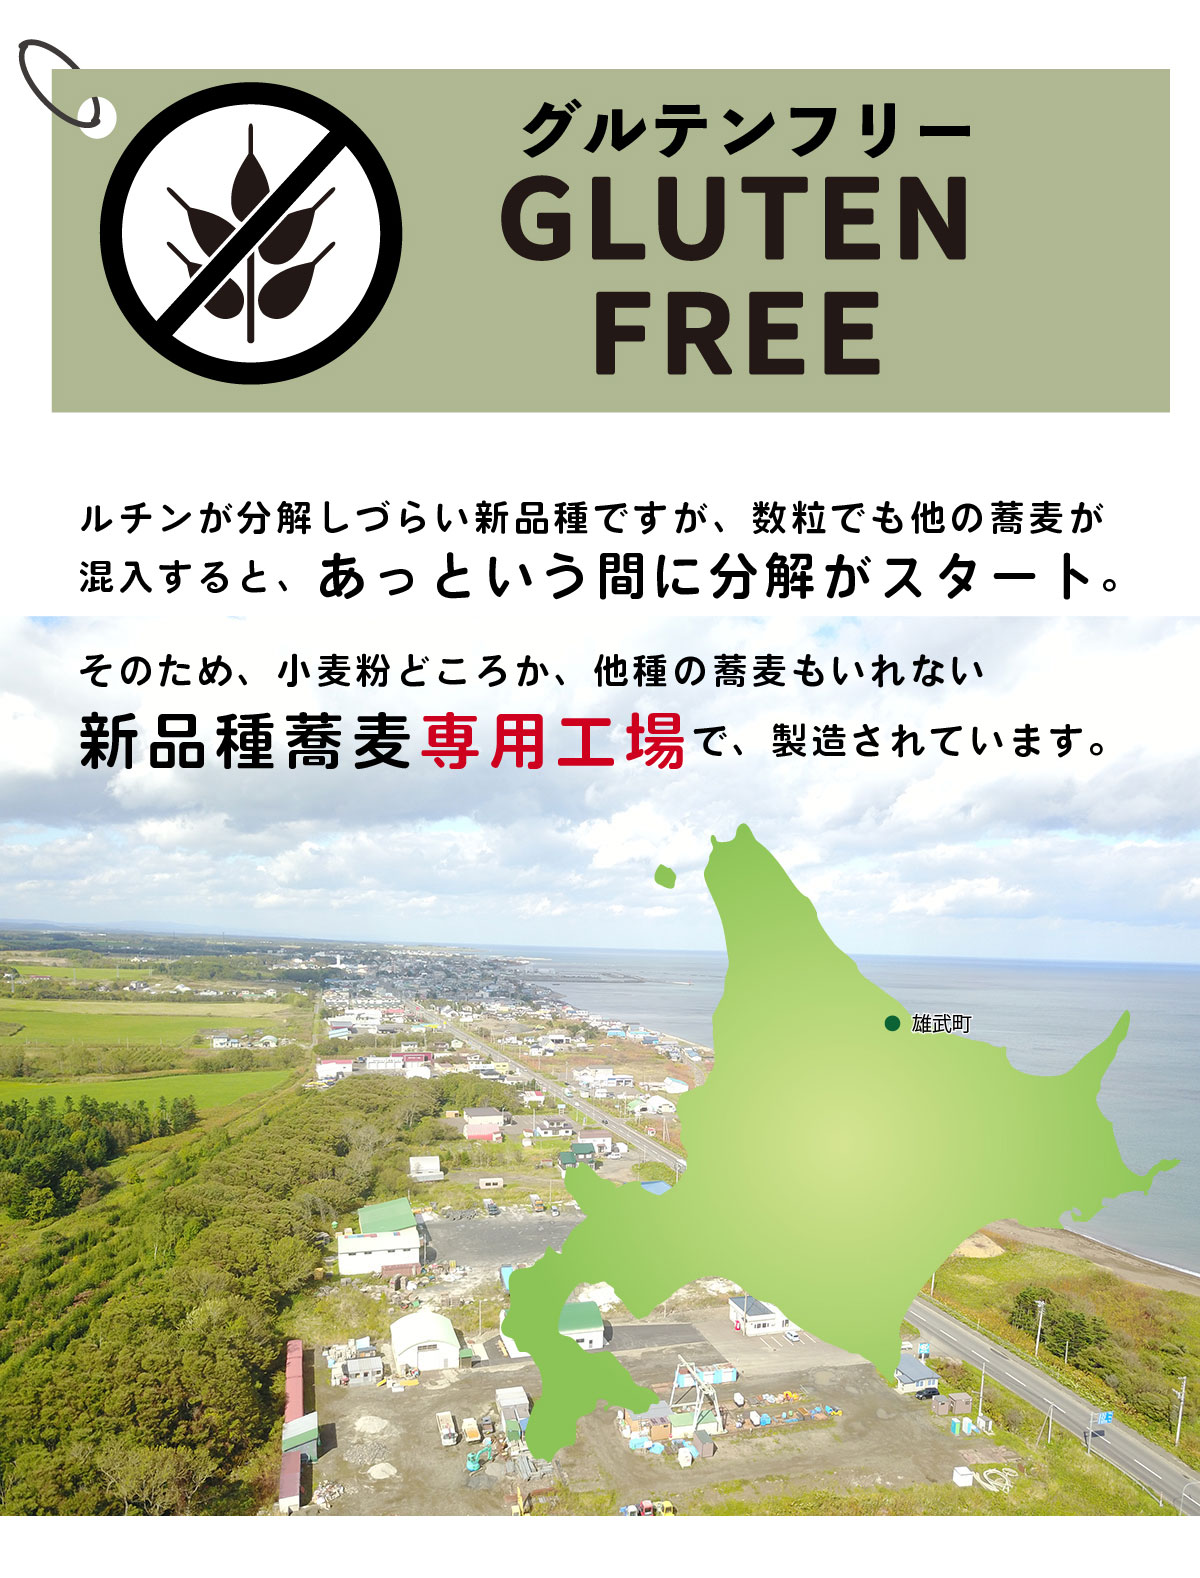 北海道 満点きらり専用工場で製粉したグルテンフリー